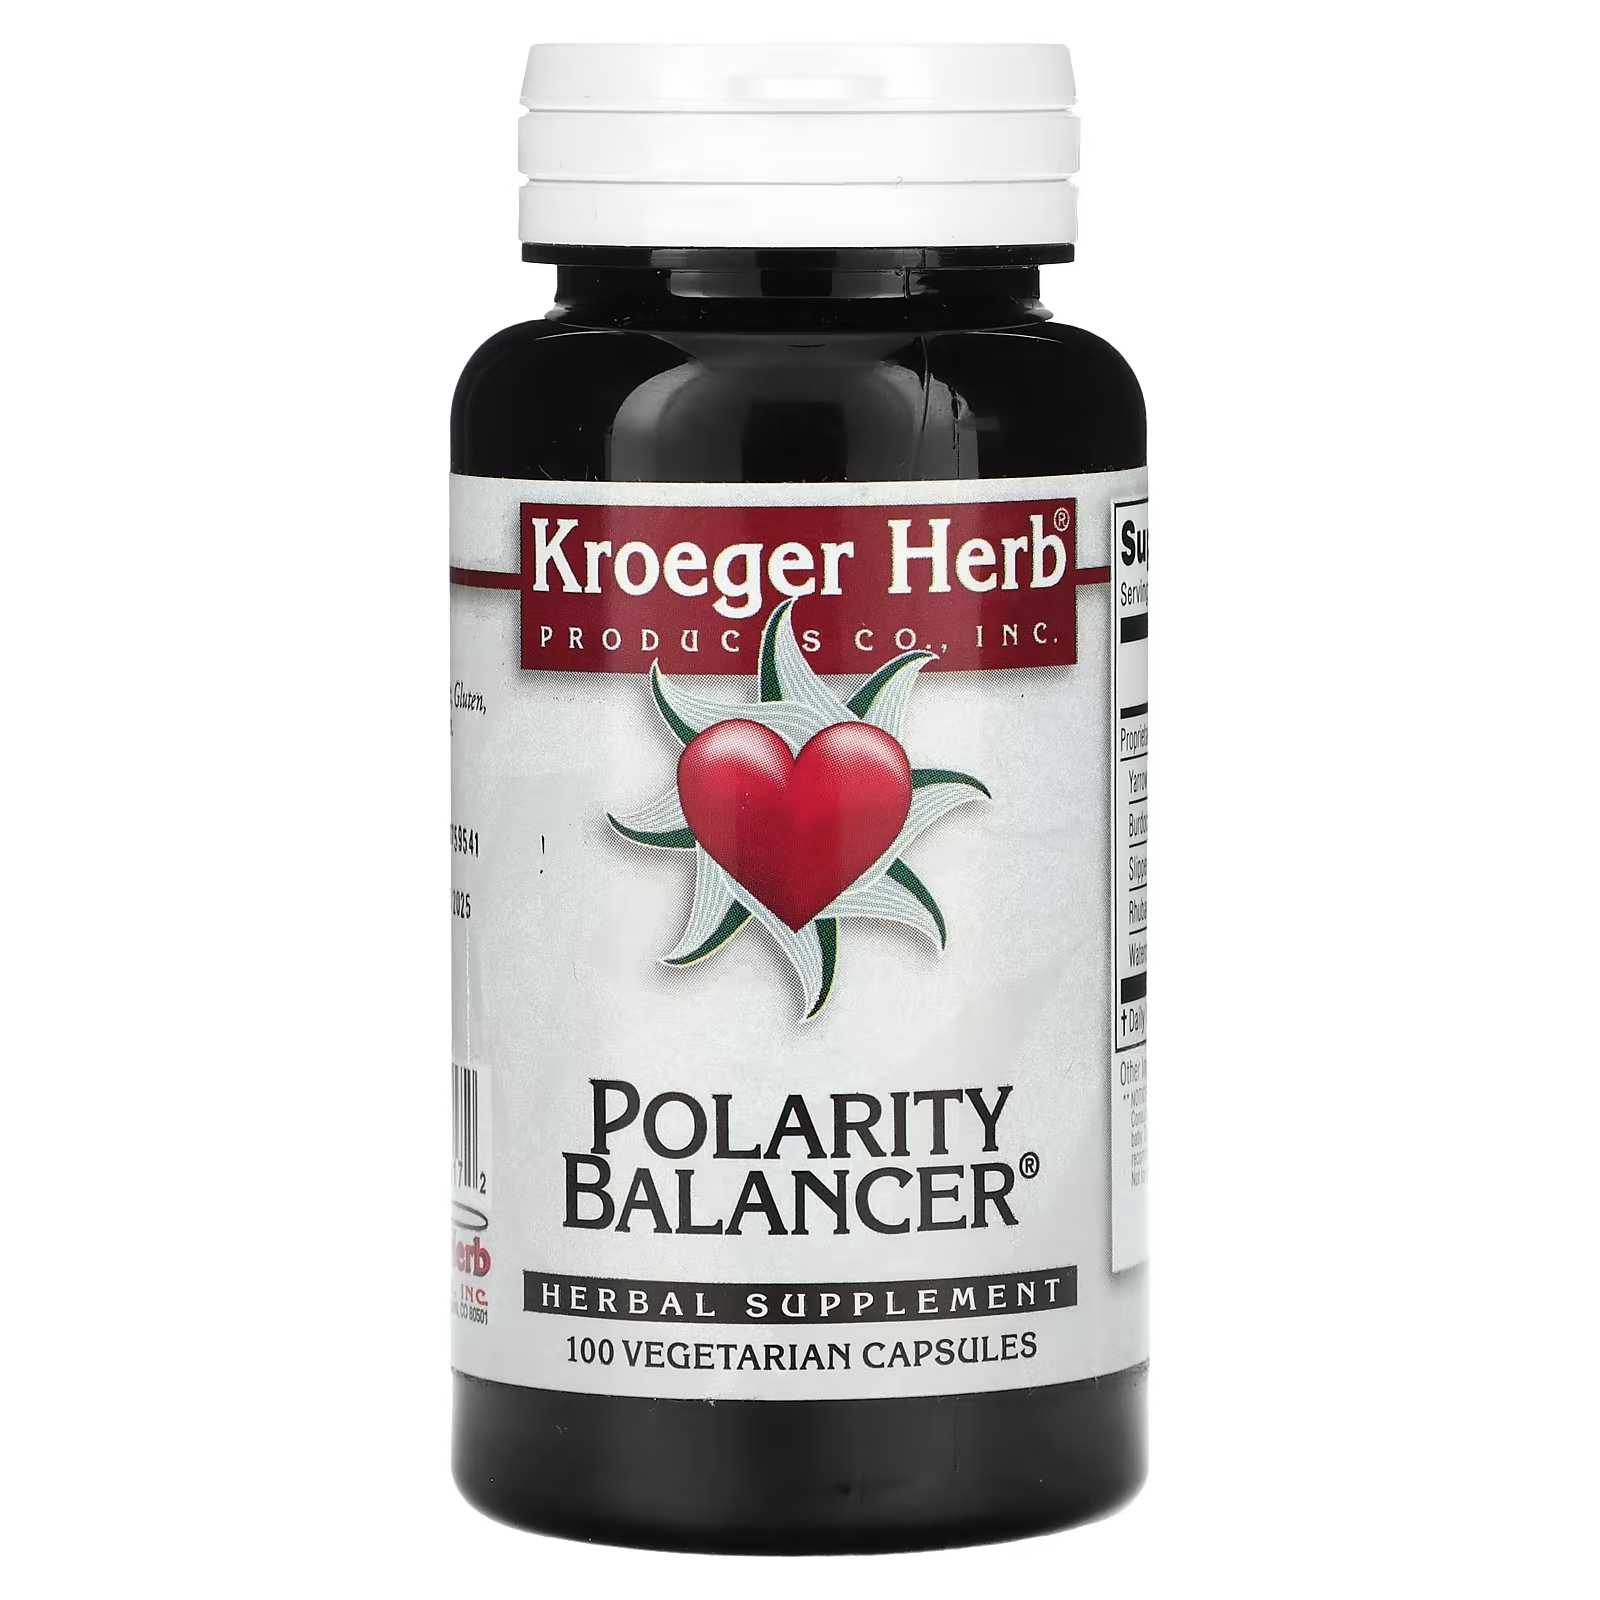 Растительная добавка Kroeger Herb Co балансировщик полярности, 100 капсул растительная добавка kroeger herb co enzymes 100 капсул